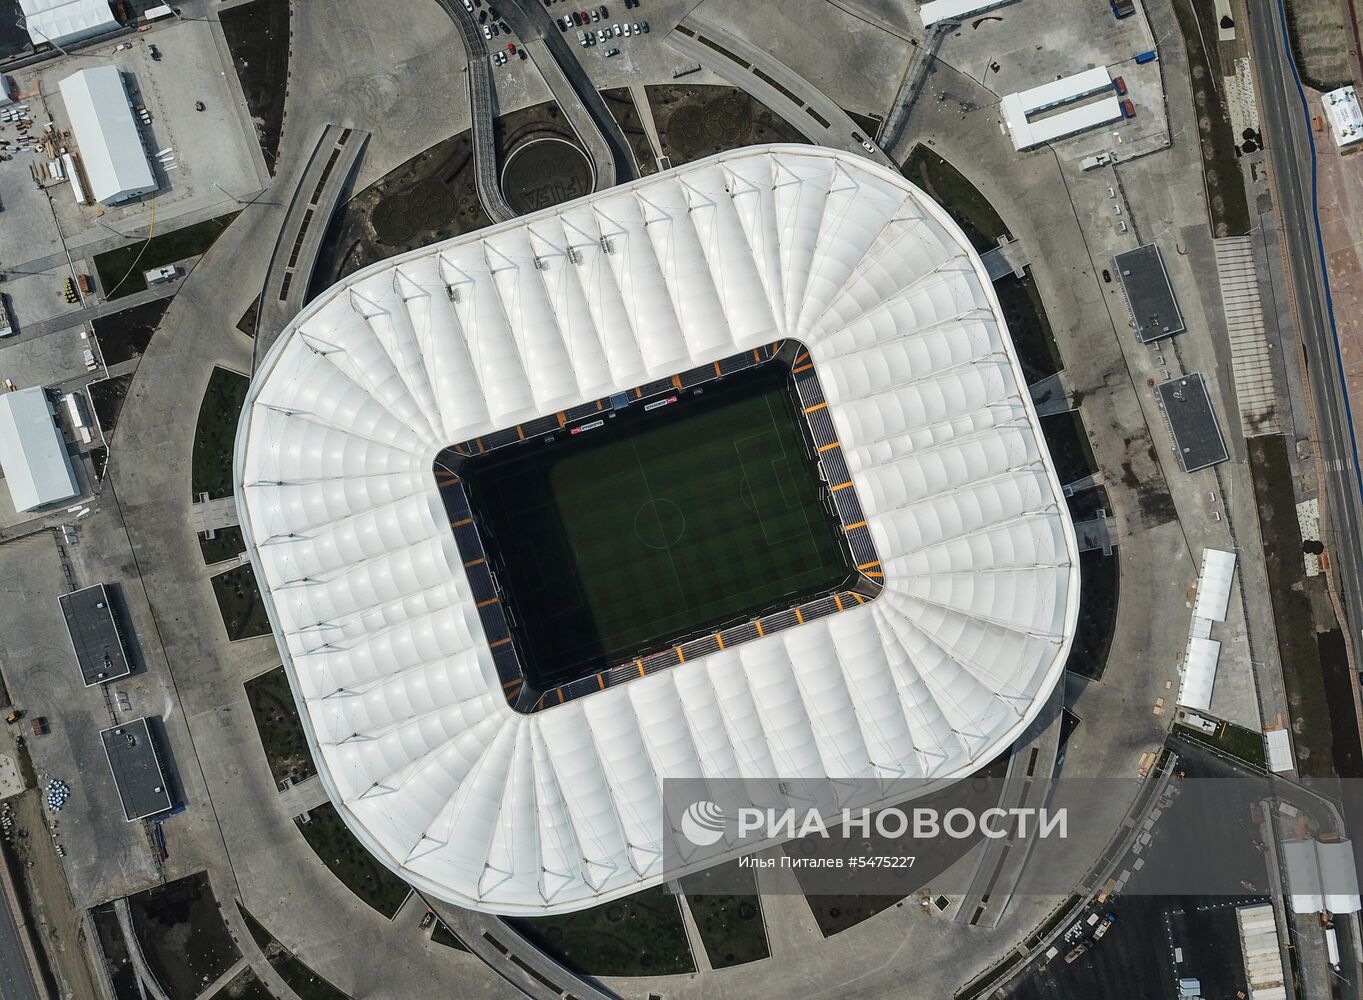 Стадион "Ростов Арена"